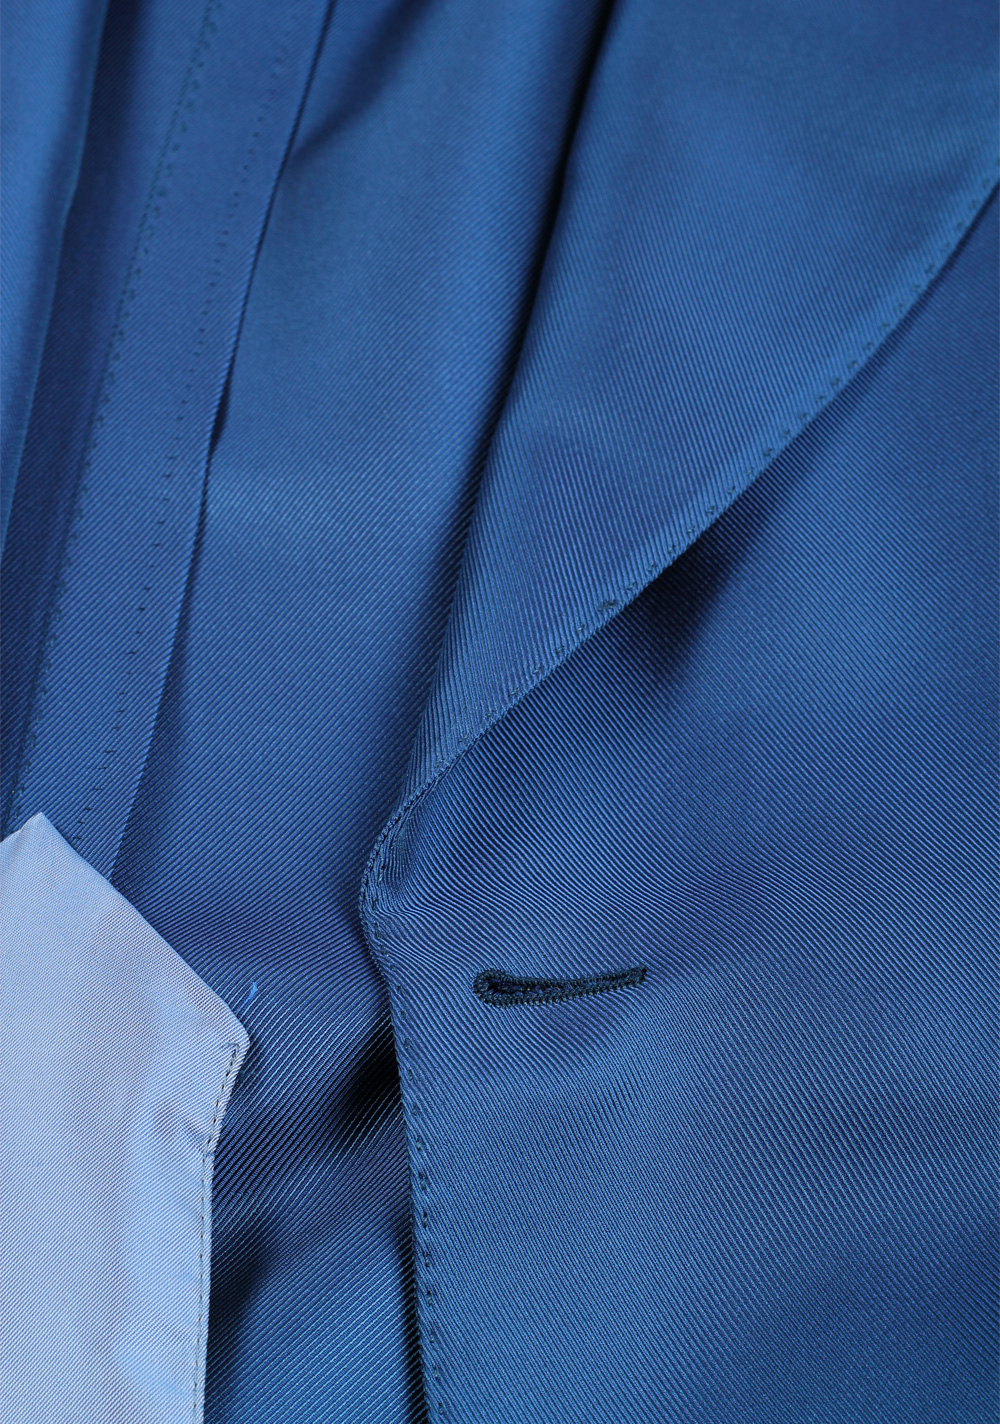 TOM FORD Atticus Blue Suit Size 46 / 36R U.S. | Costume Limité